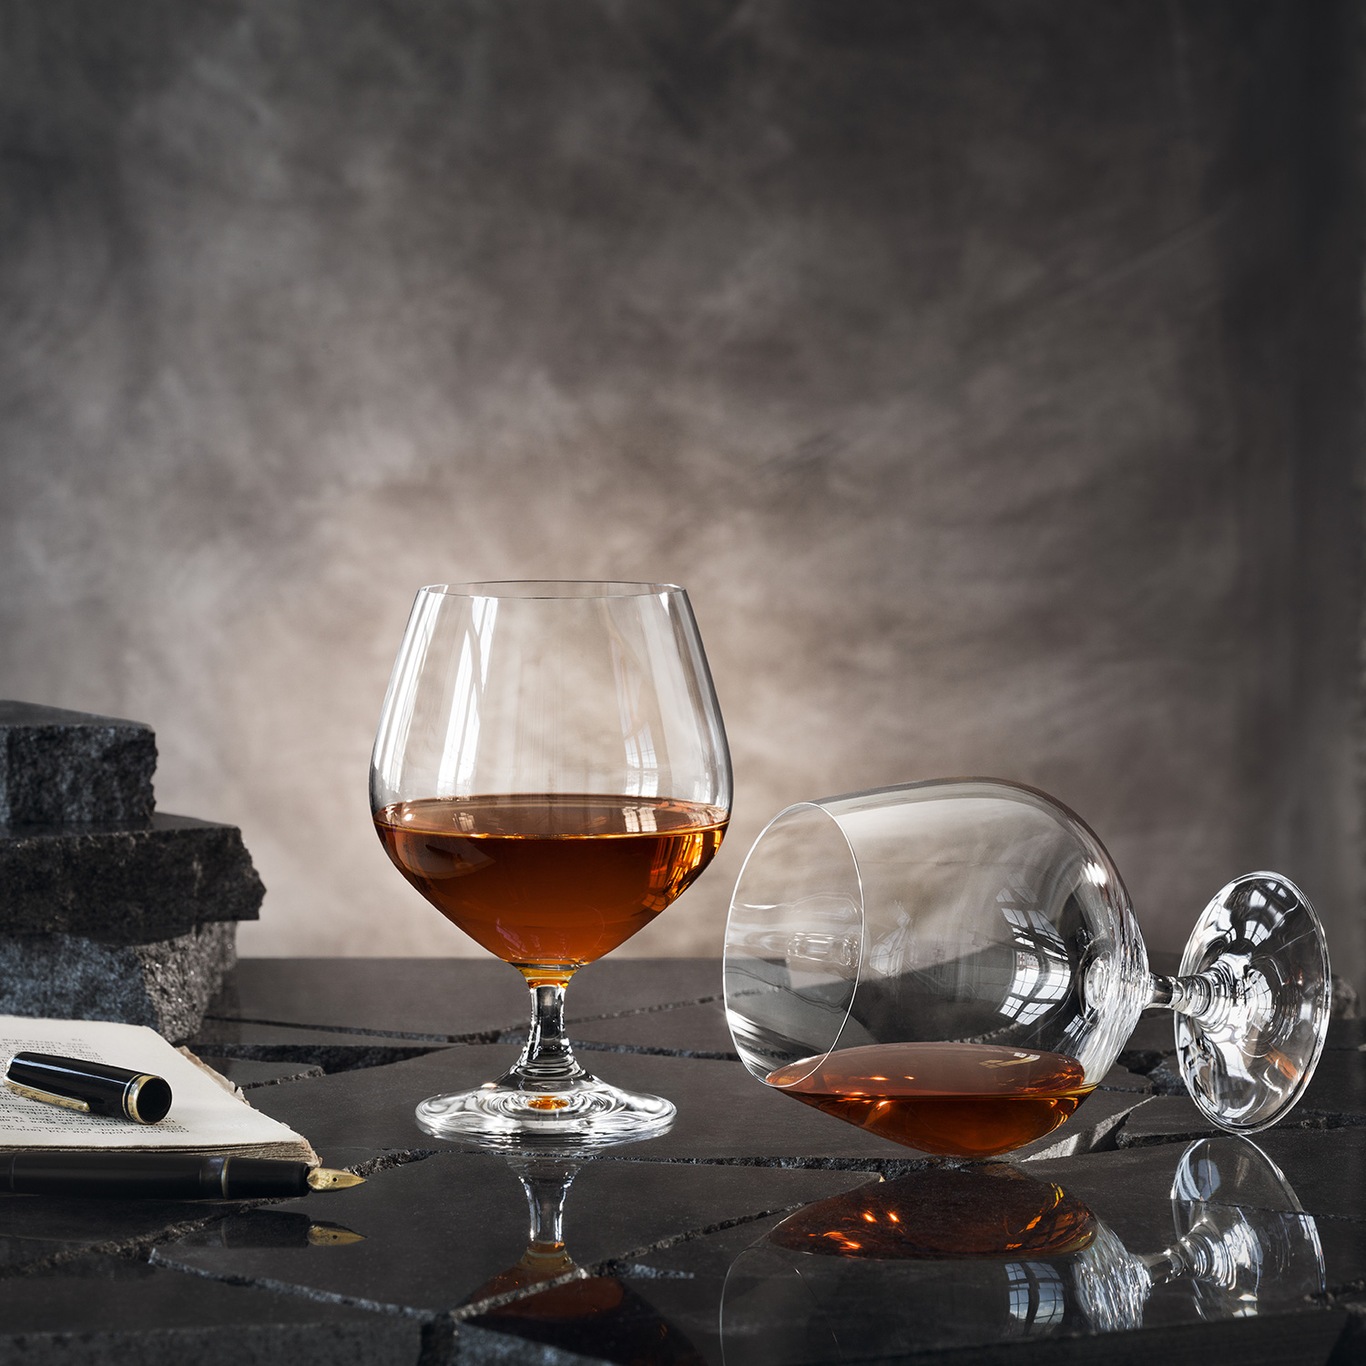 https://royaldesign.com/image/11/orrefors-cognac-prestige-50-cl-4-pcs-2?w=800&quality=80